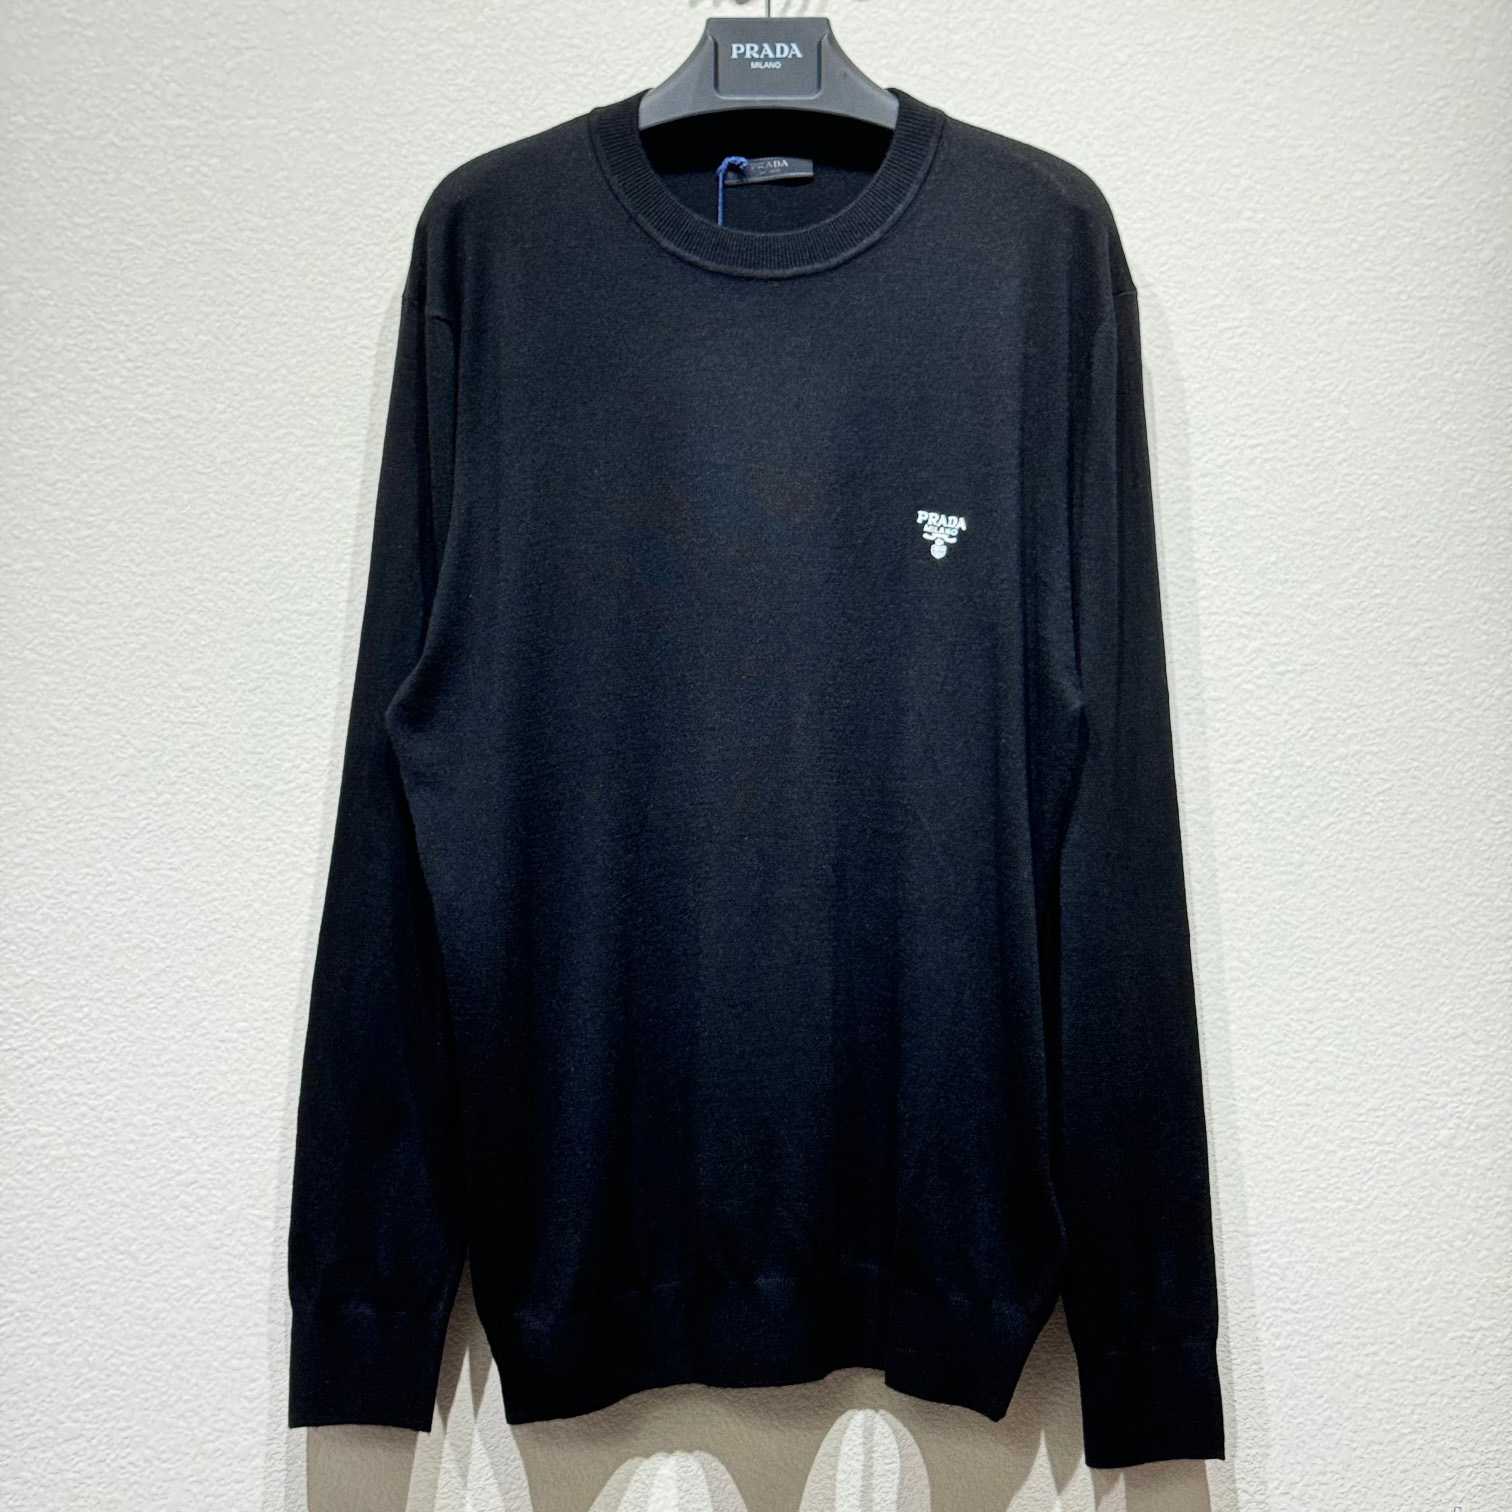 Prada Cashmere Sweater - DesignerGu